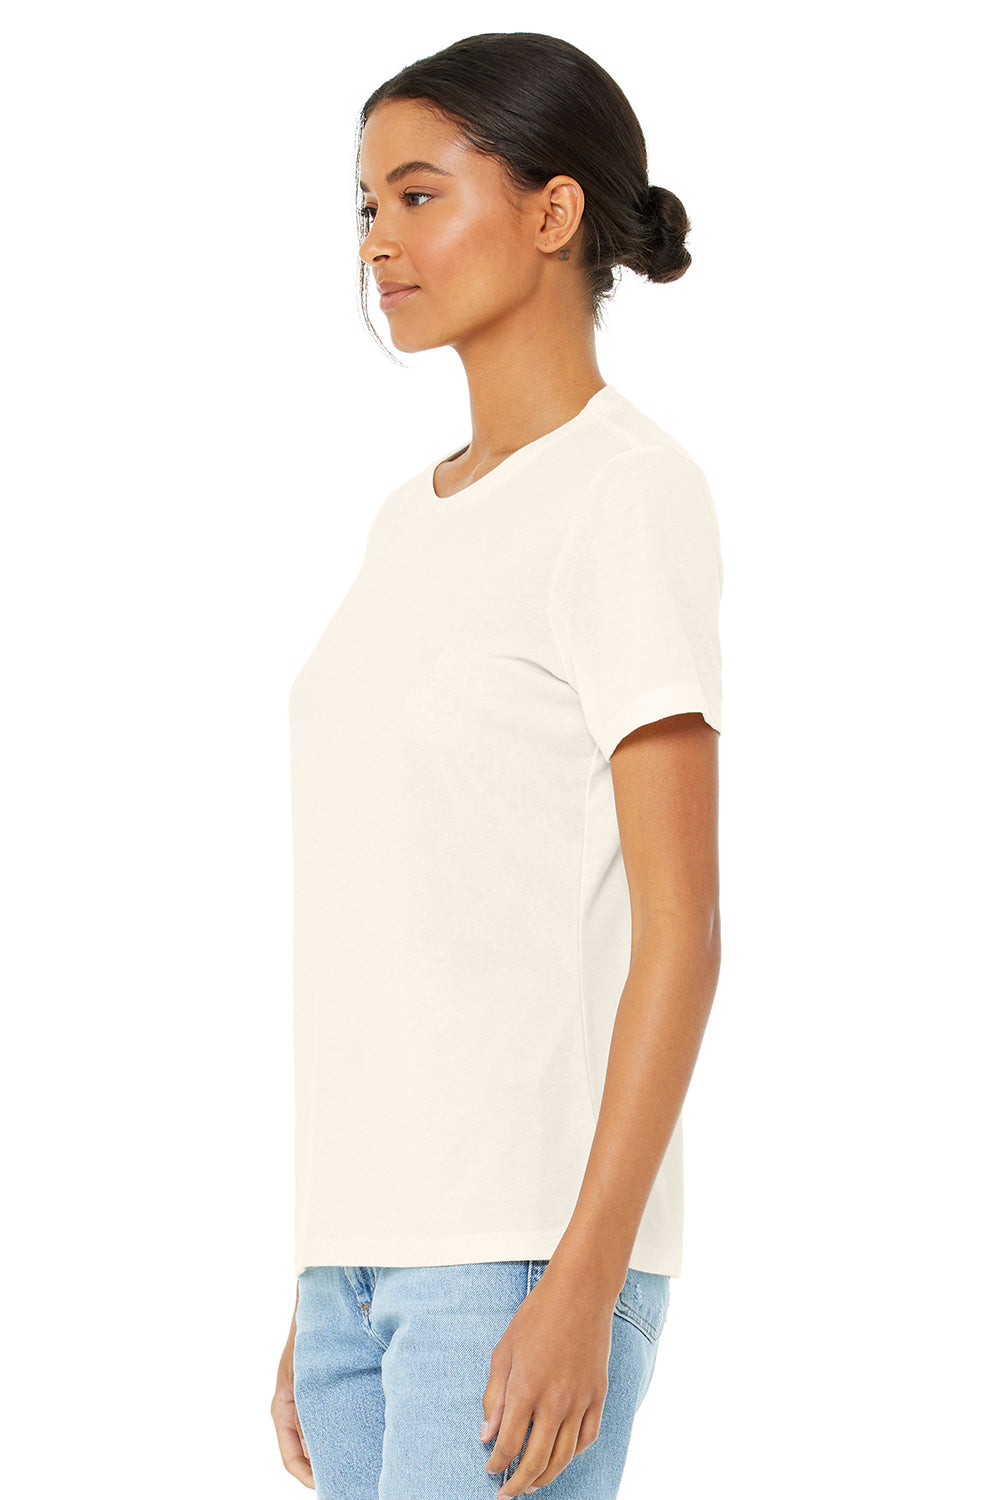 Bella + Canvas BC6413 Womens Short Sleeve Crewneck T-Shirt Natural Model 3Q